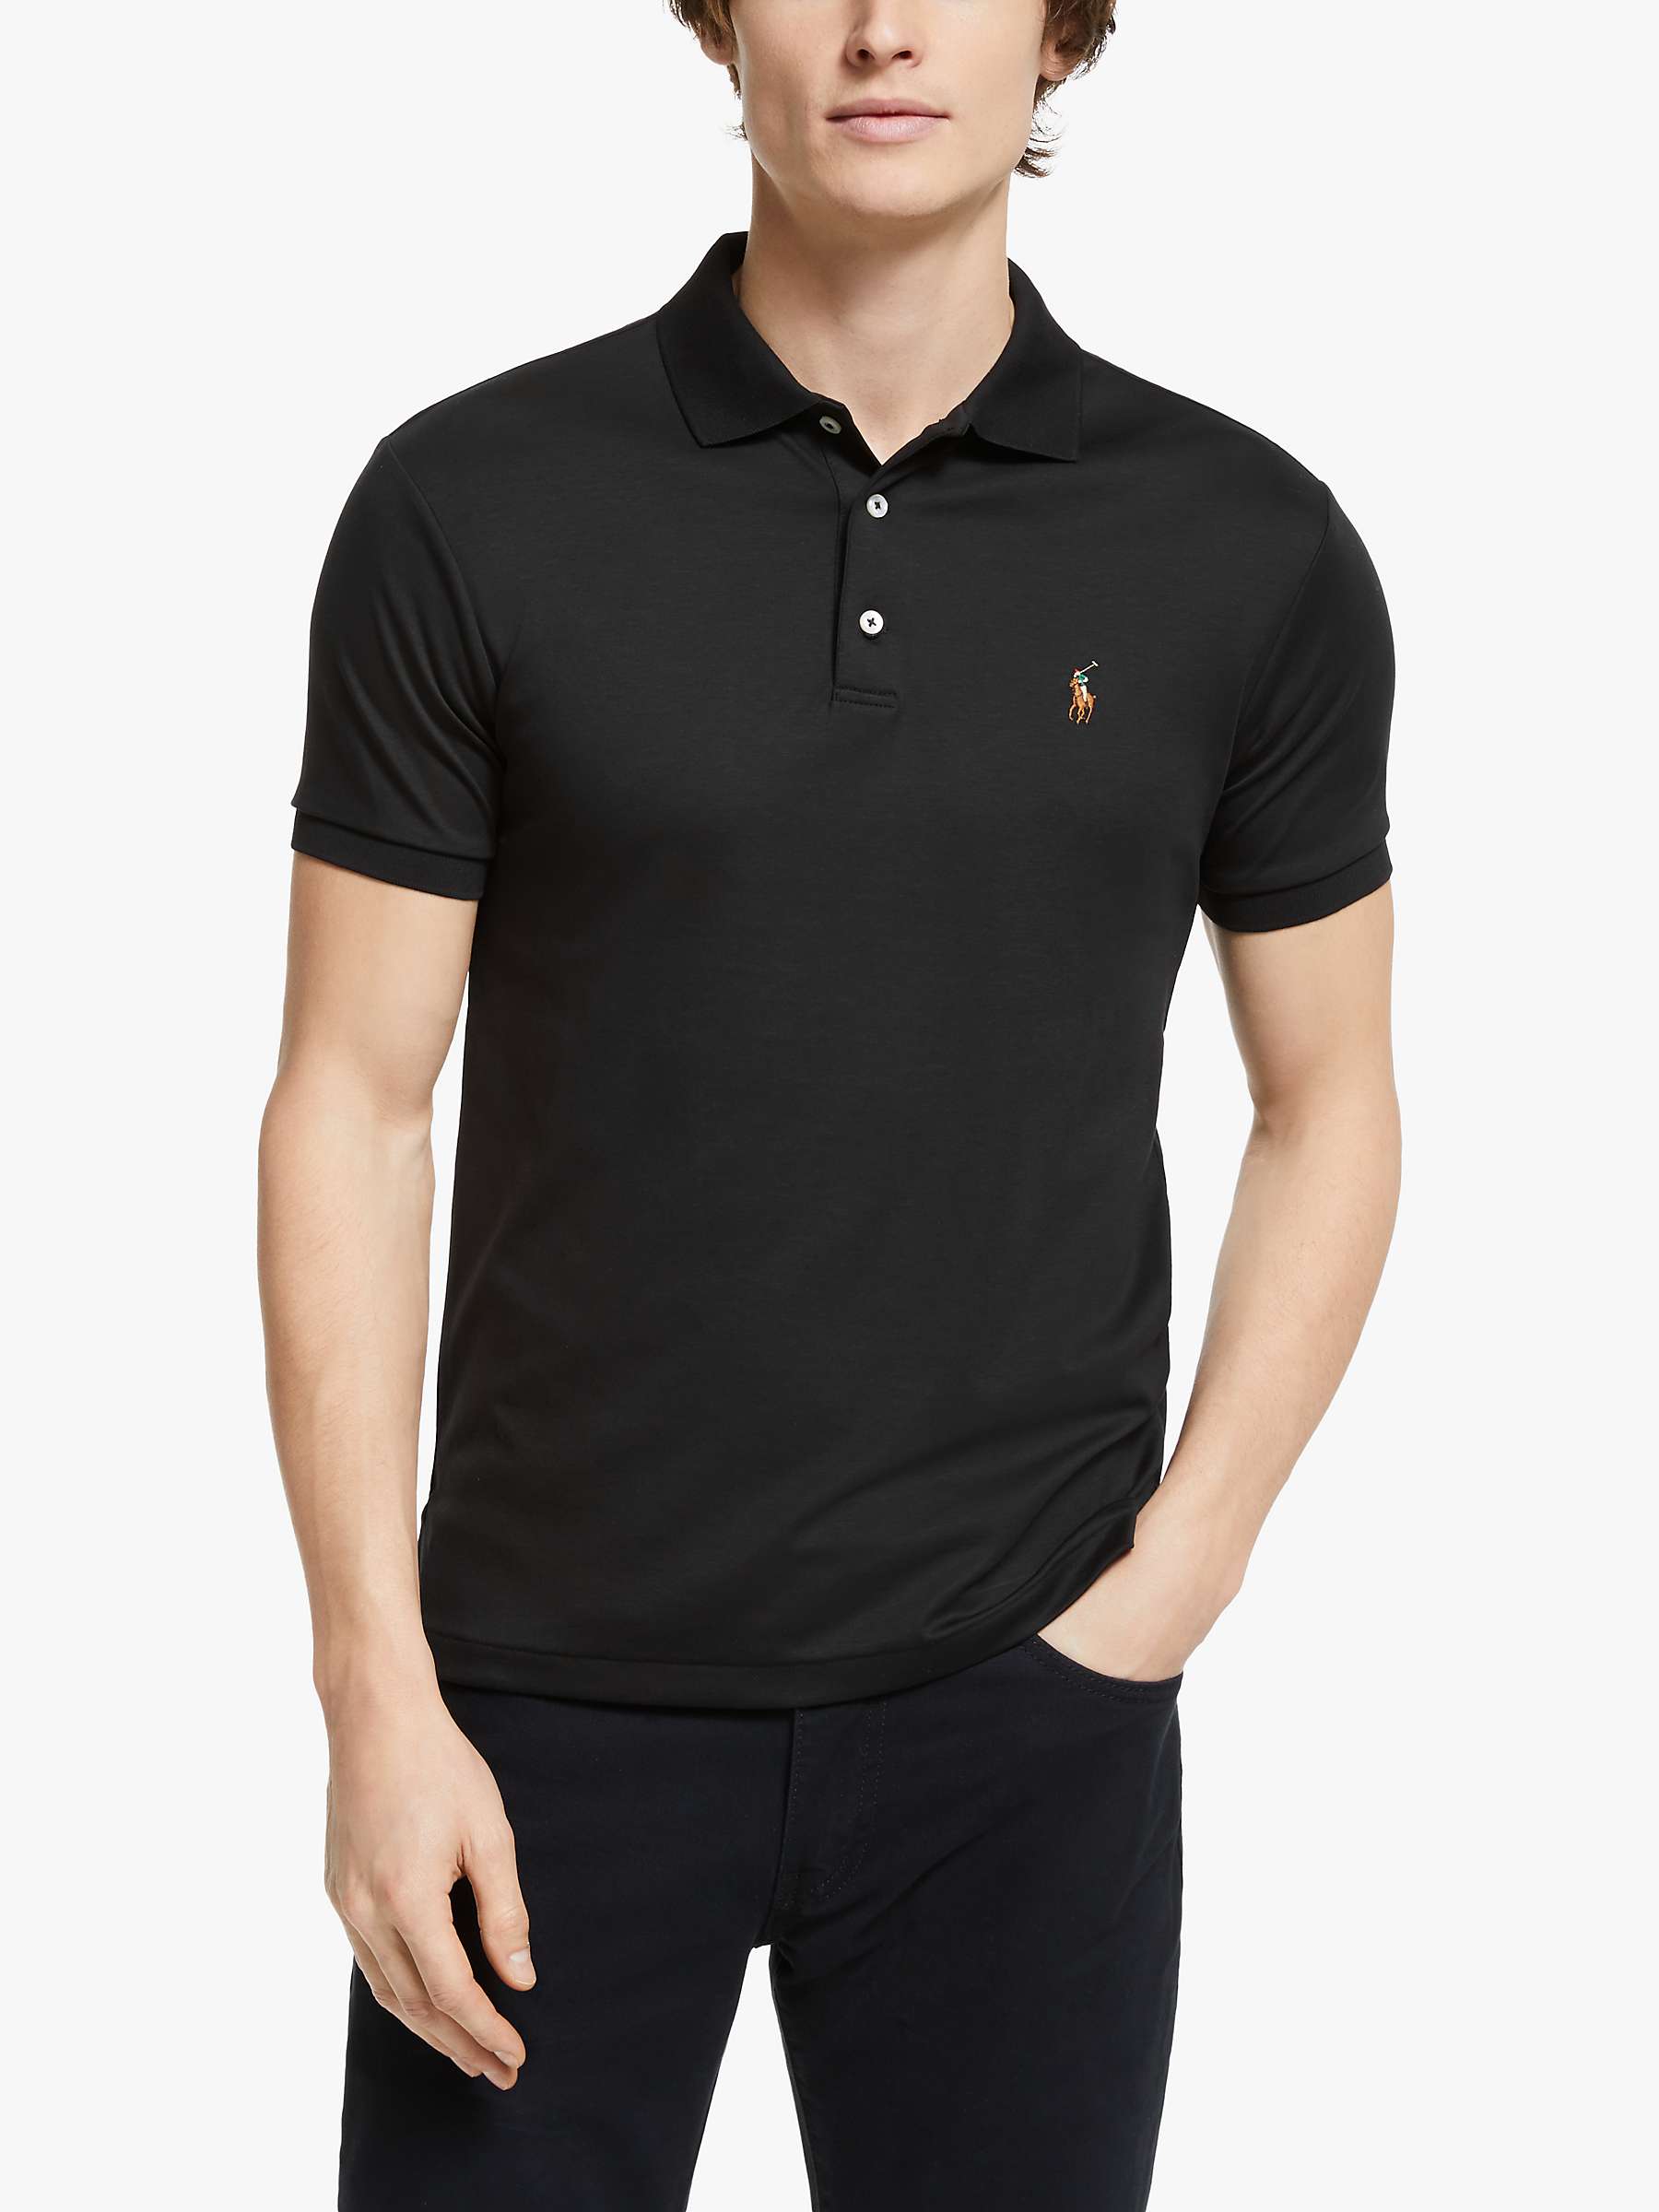 Plain Black Polo Shirt Cheap Orders, Save 59% | jlcatj.gob.mx